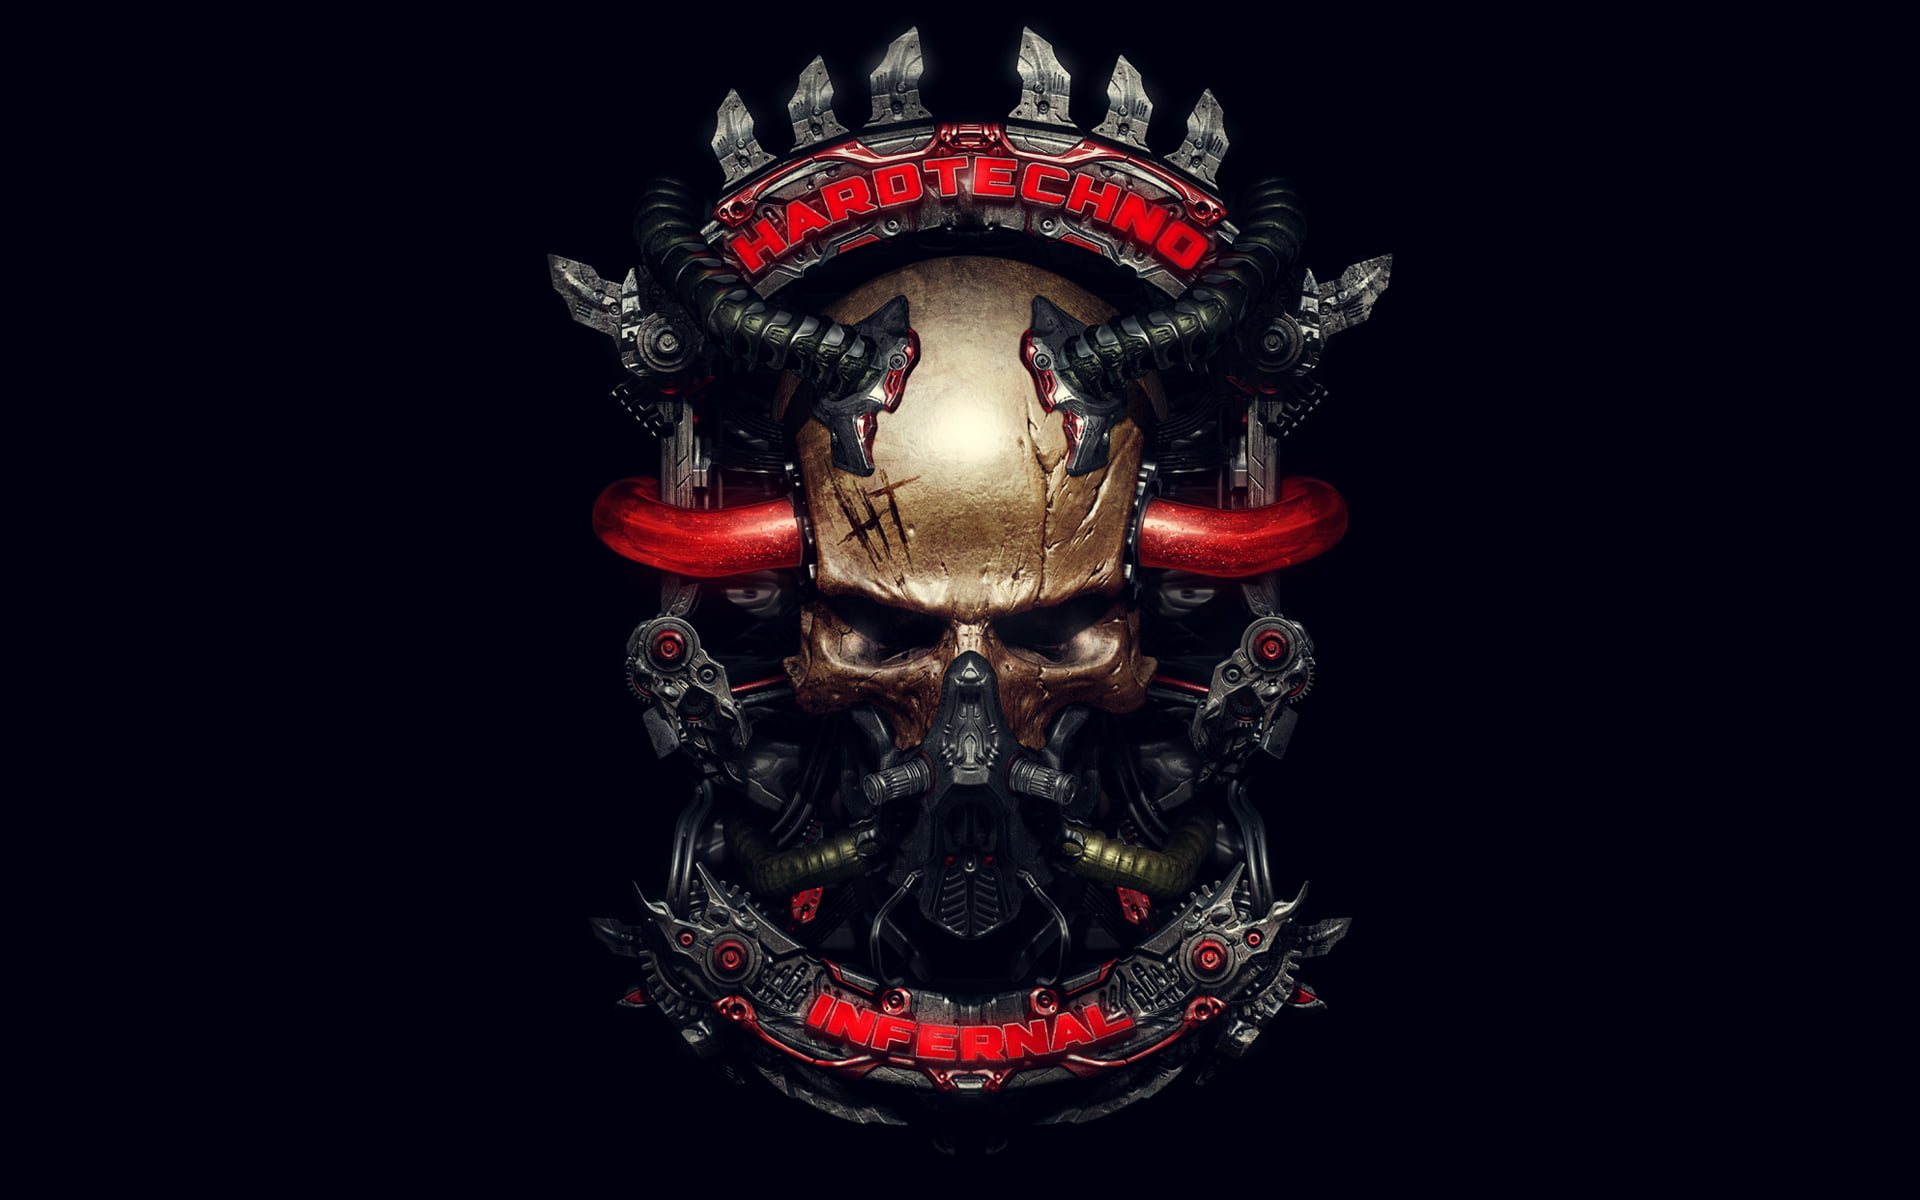 gold skull logo, style, music, mechanism, tube, infernal, hardtechno